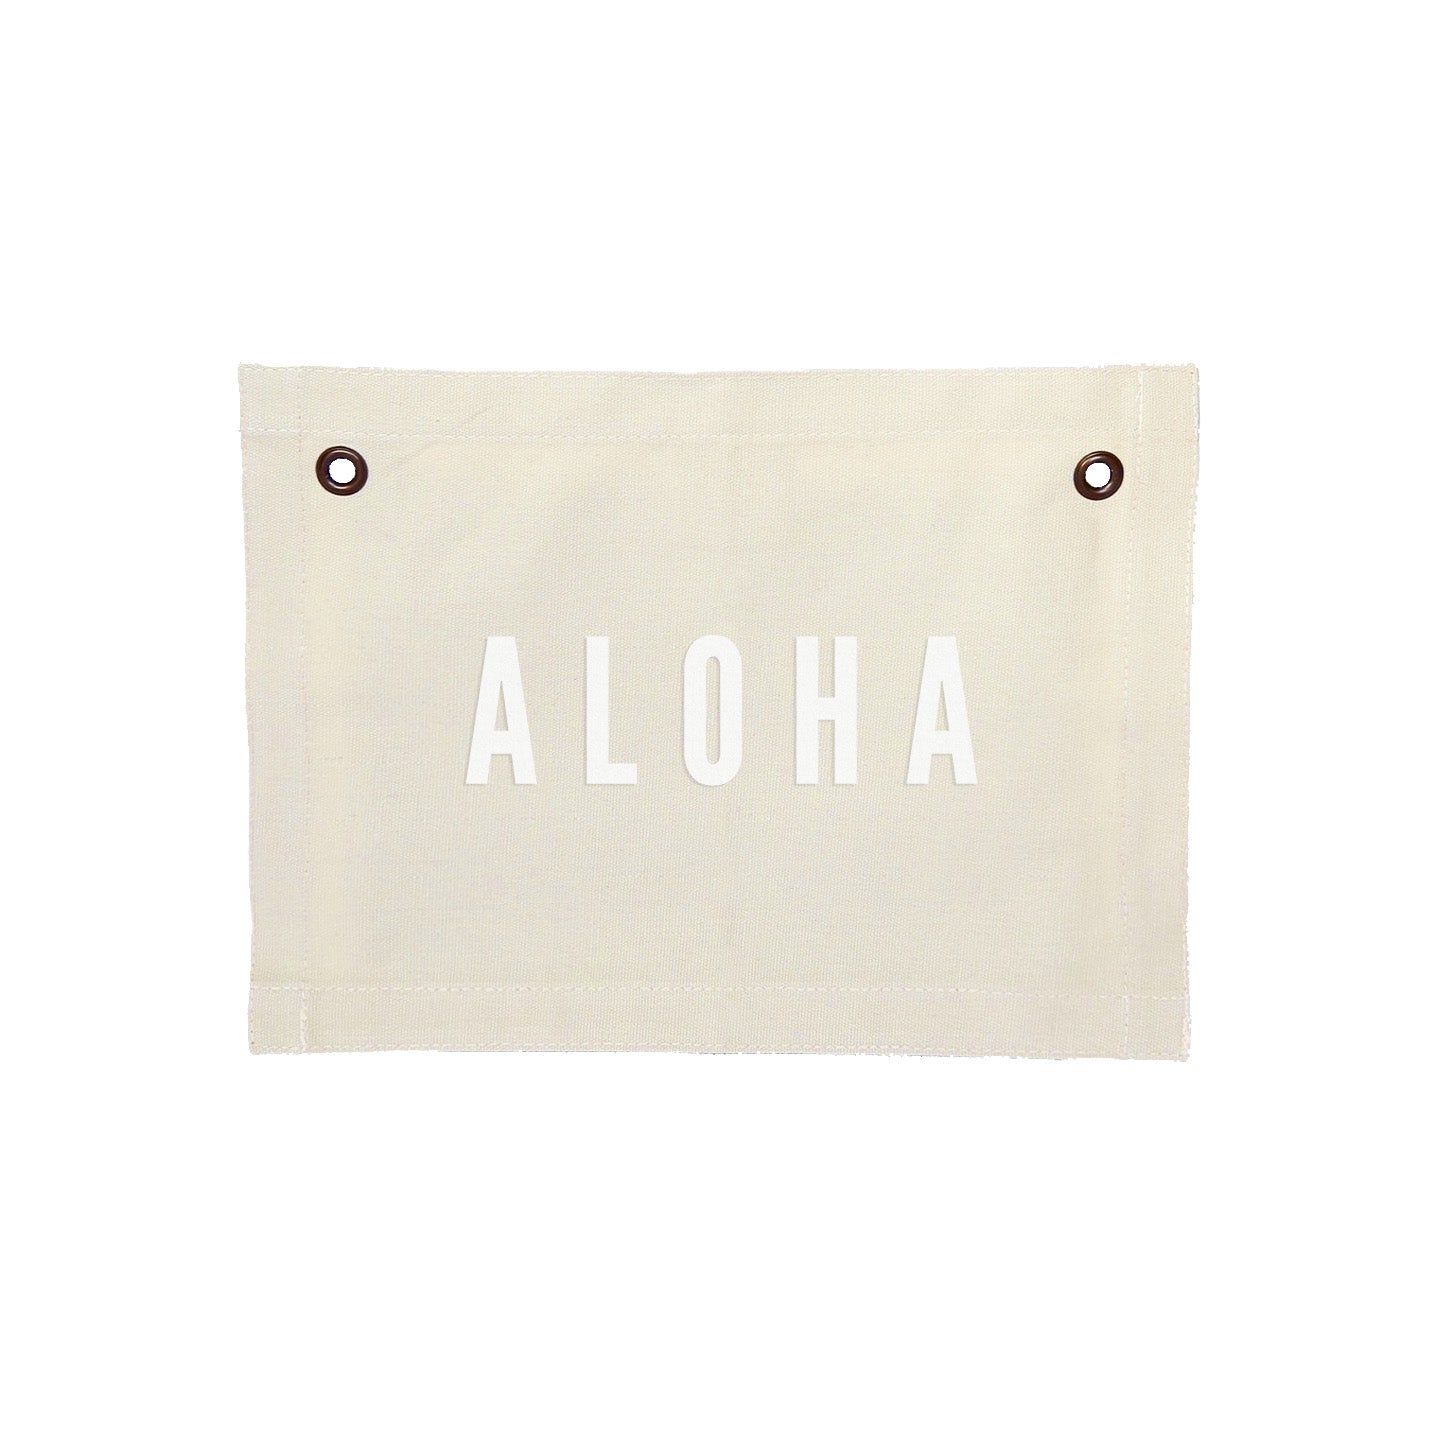 Aloha Small Canvas Flag